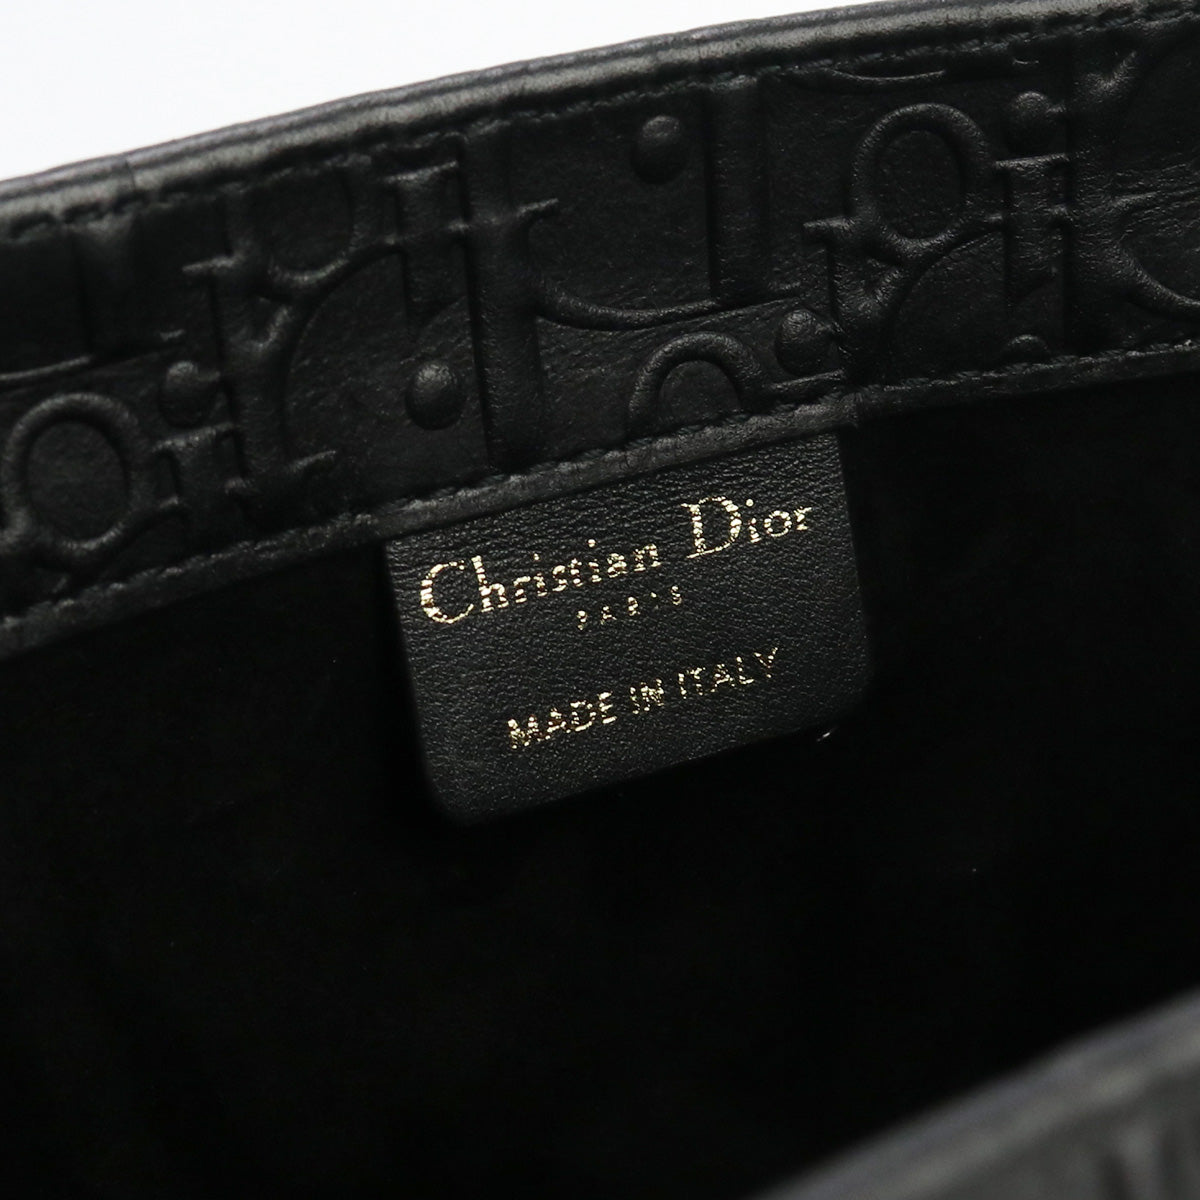 Christian Dior クリスチャンディオール ブックトート ミディアムバッグ トートバッグ レザー【中古】 レディース